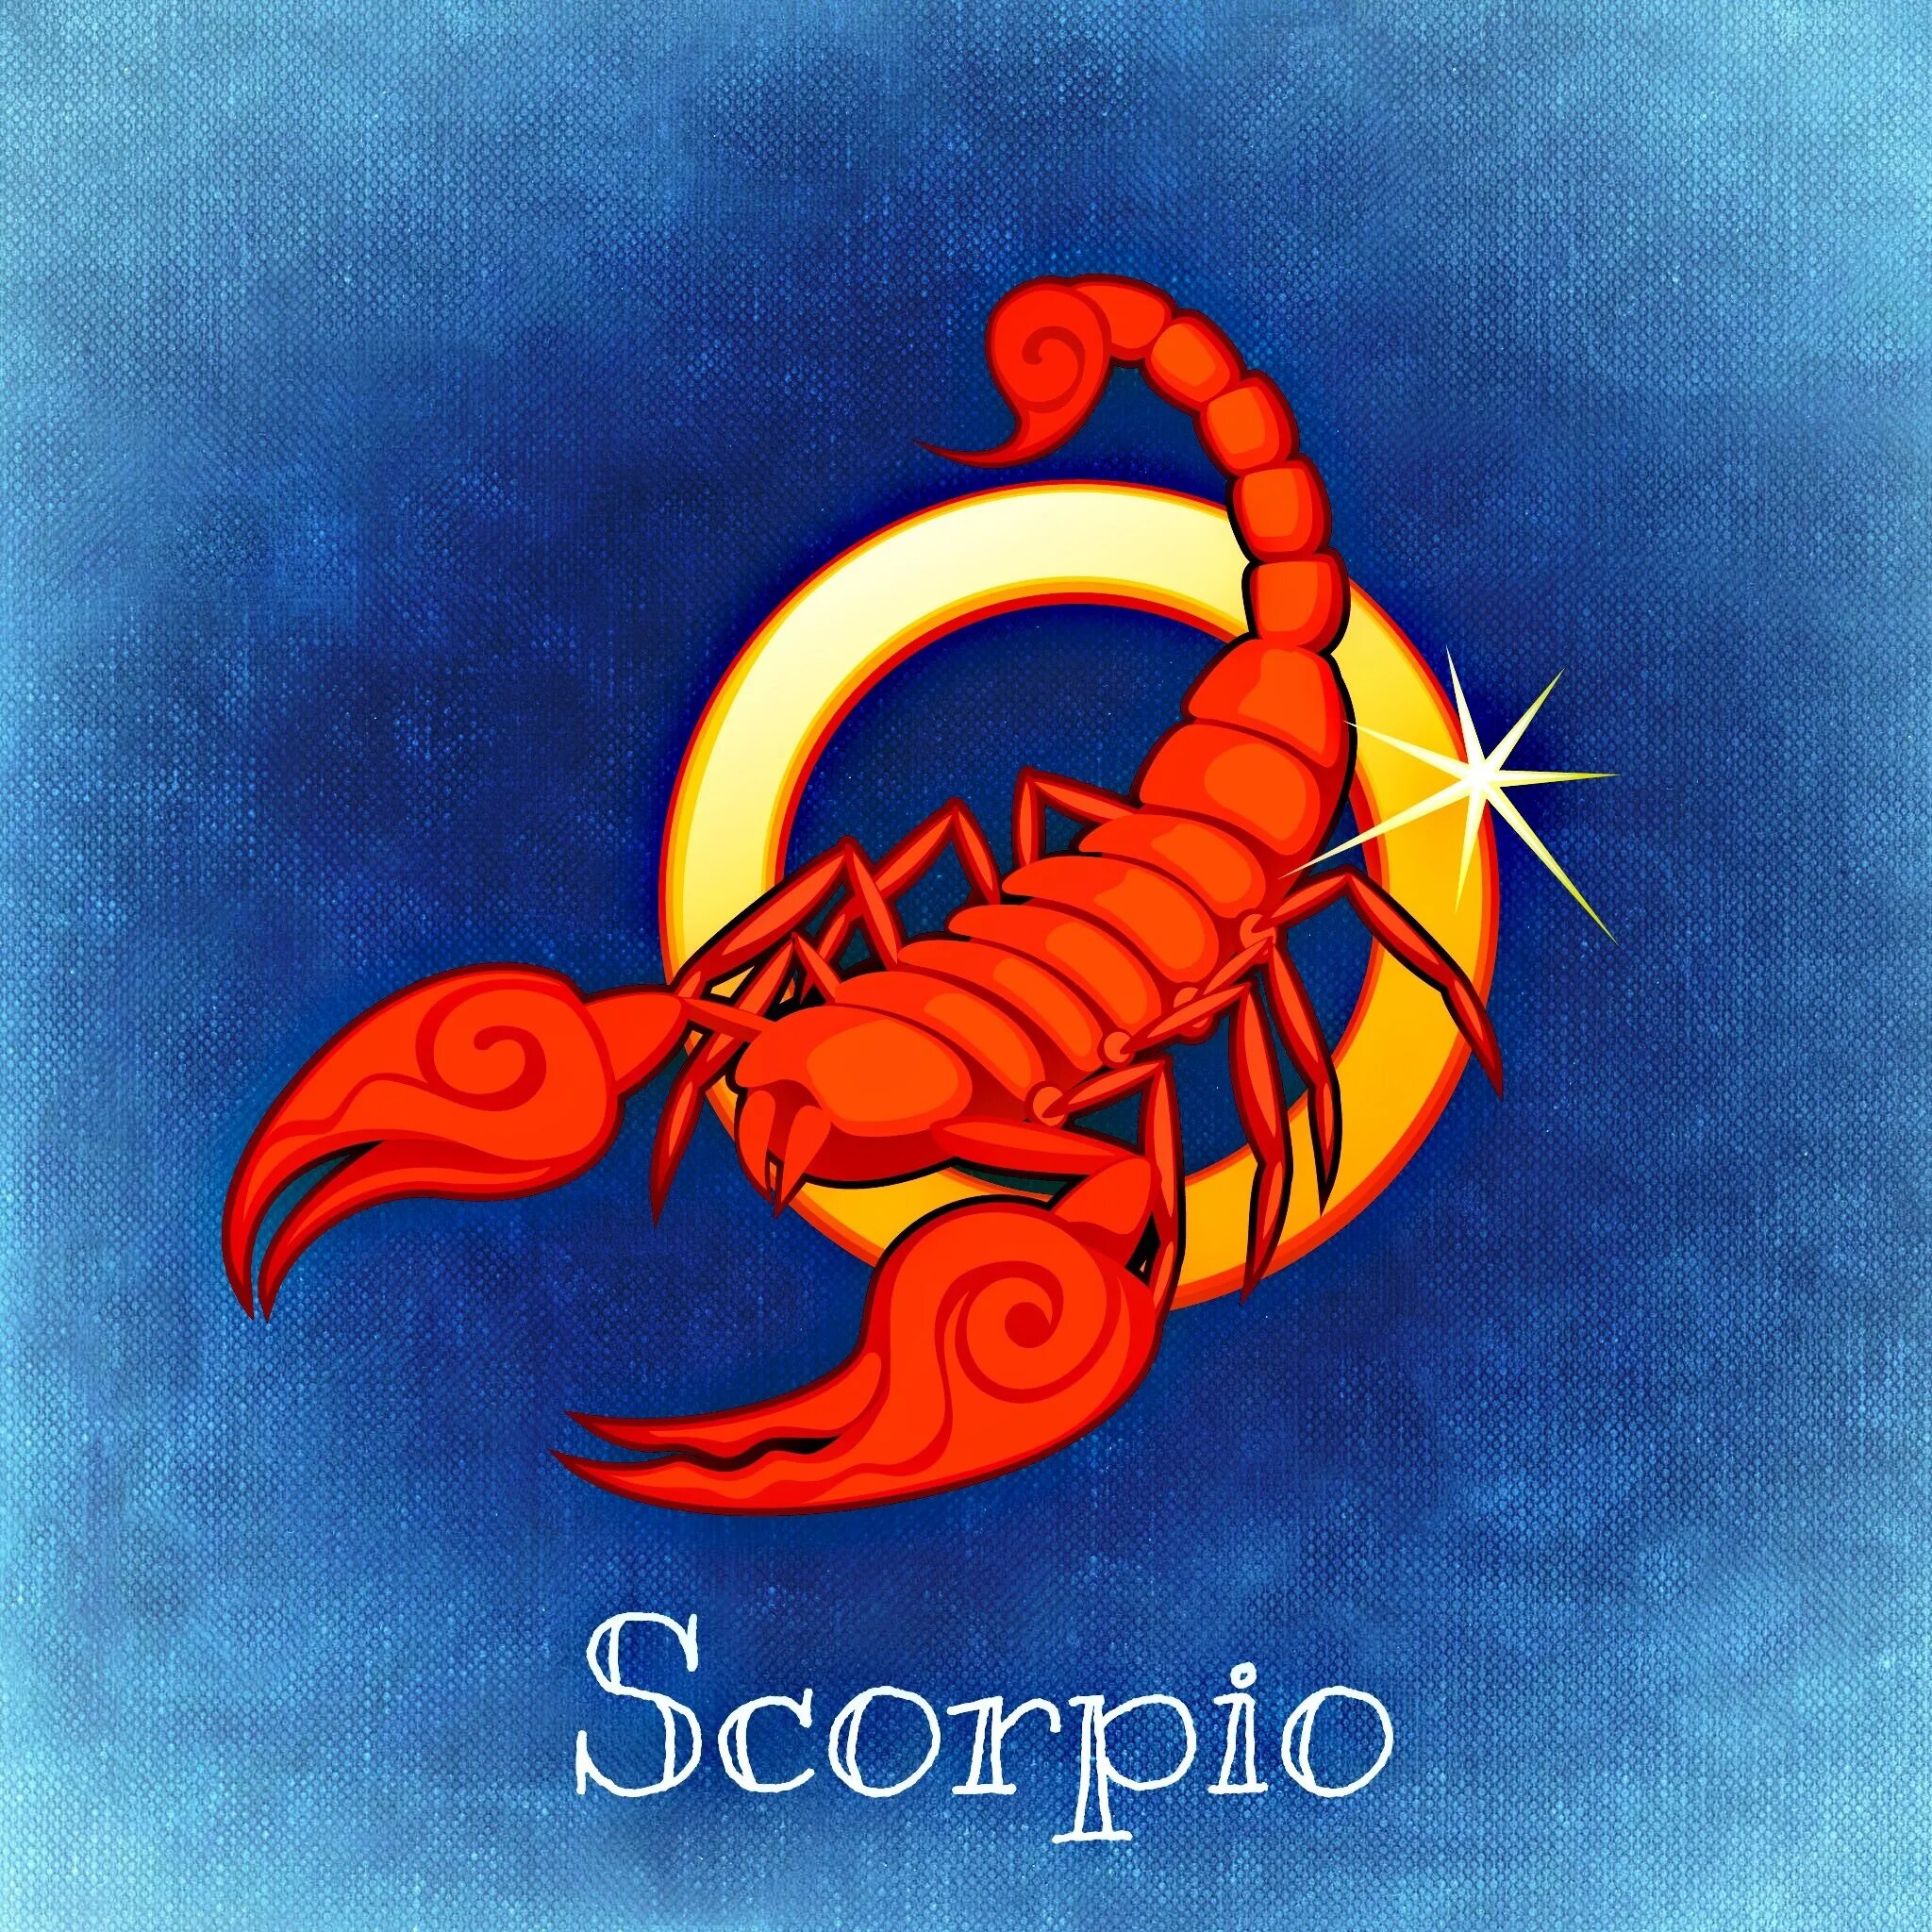 Мужчины рожденные в год дракона. Знак зодиака Скорпион. Скорпион знак зодиака Скорпион. Скорпион знак зодиака символ. Скорпион рисунок.